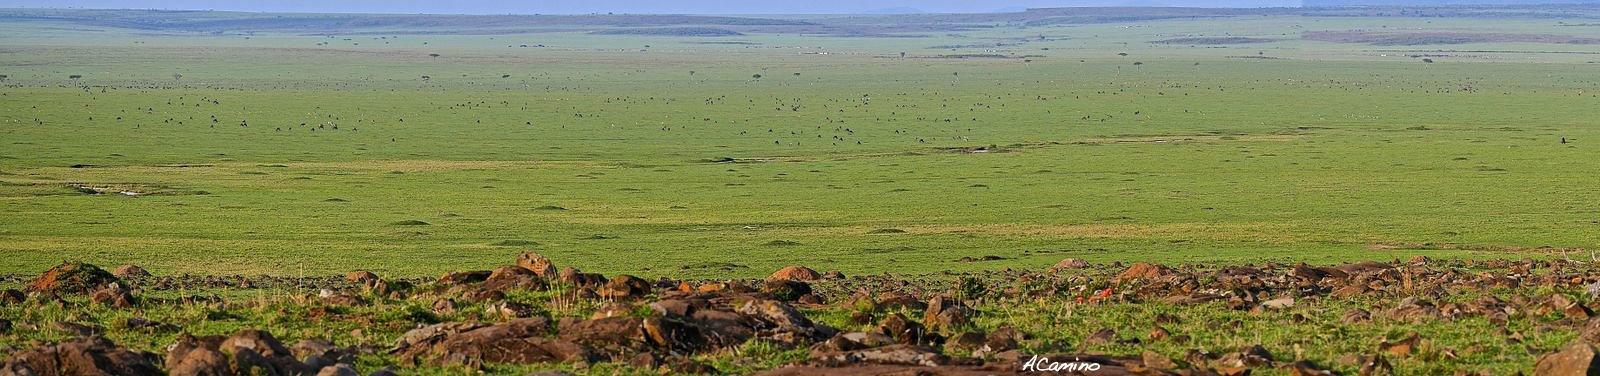 El parto de una gacela en un Masai Mara, lleno de búfalos, leones, guepardos... - 12 días de Safari en Kenia: Jambo bwana (48)